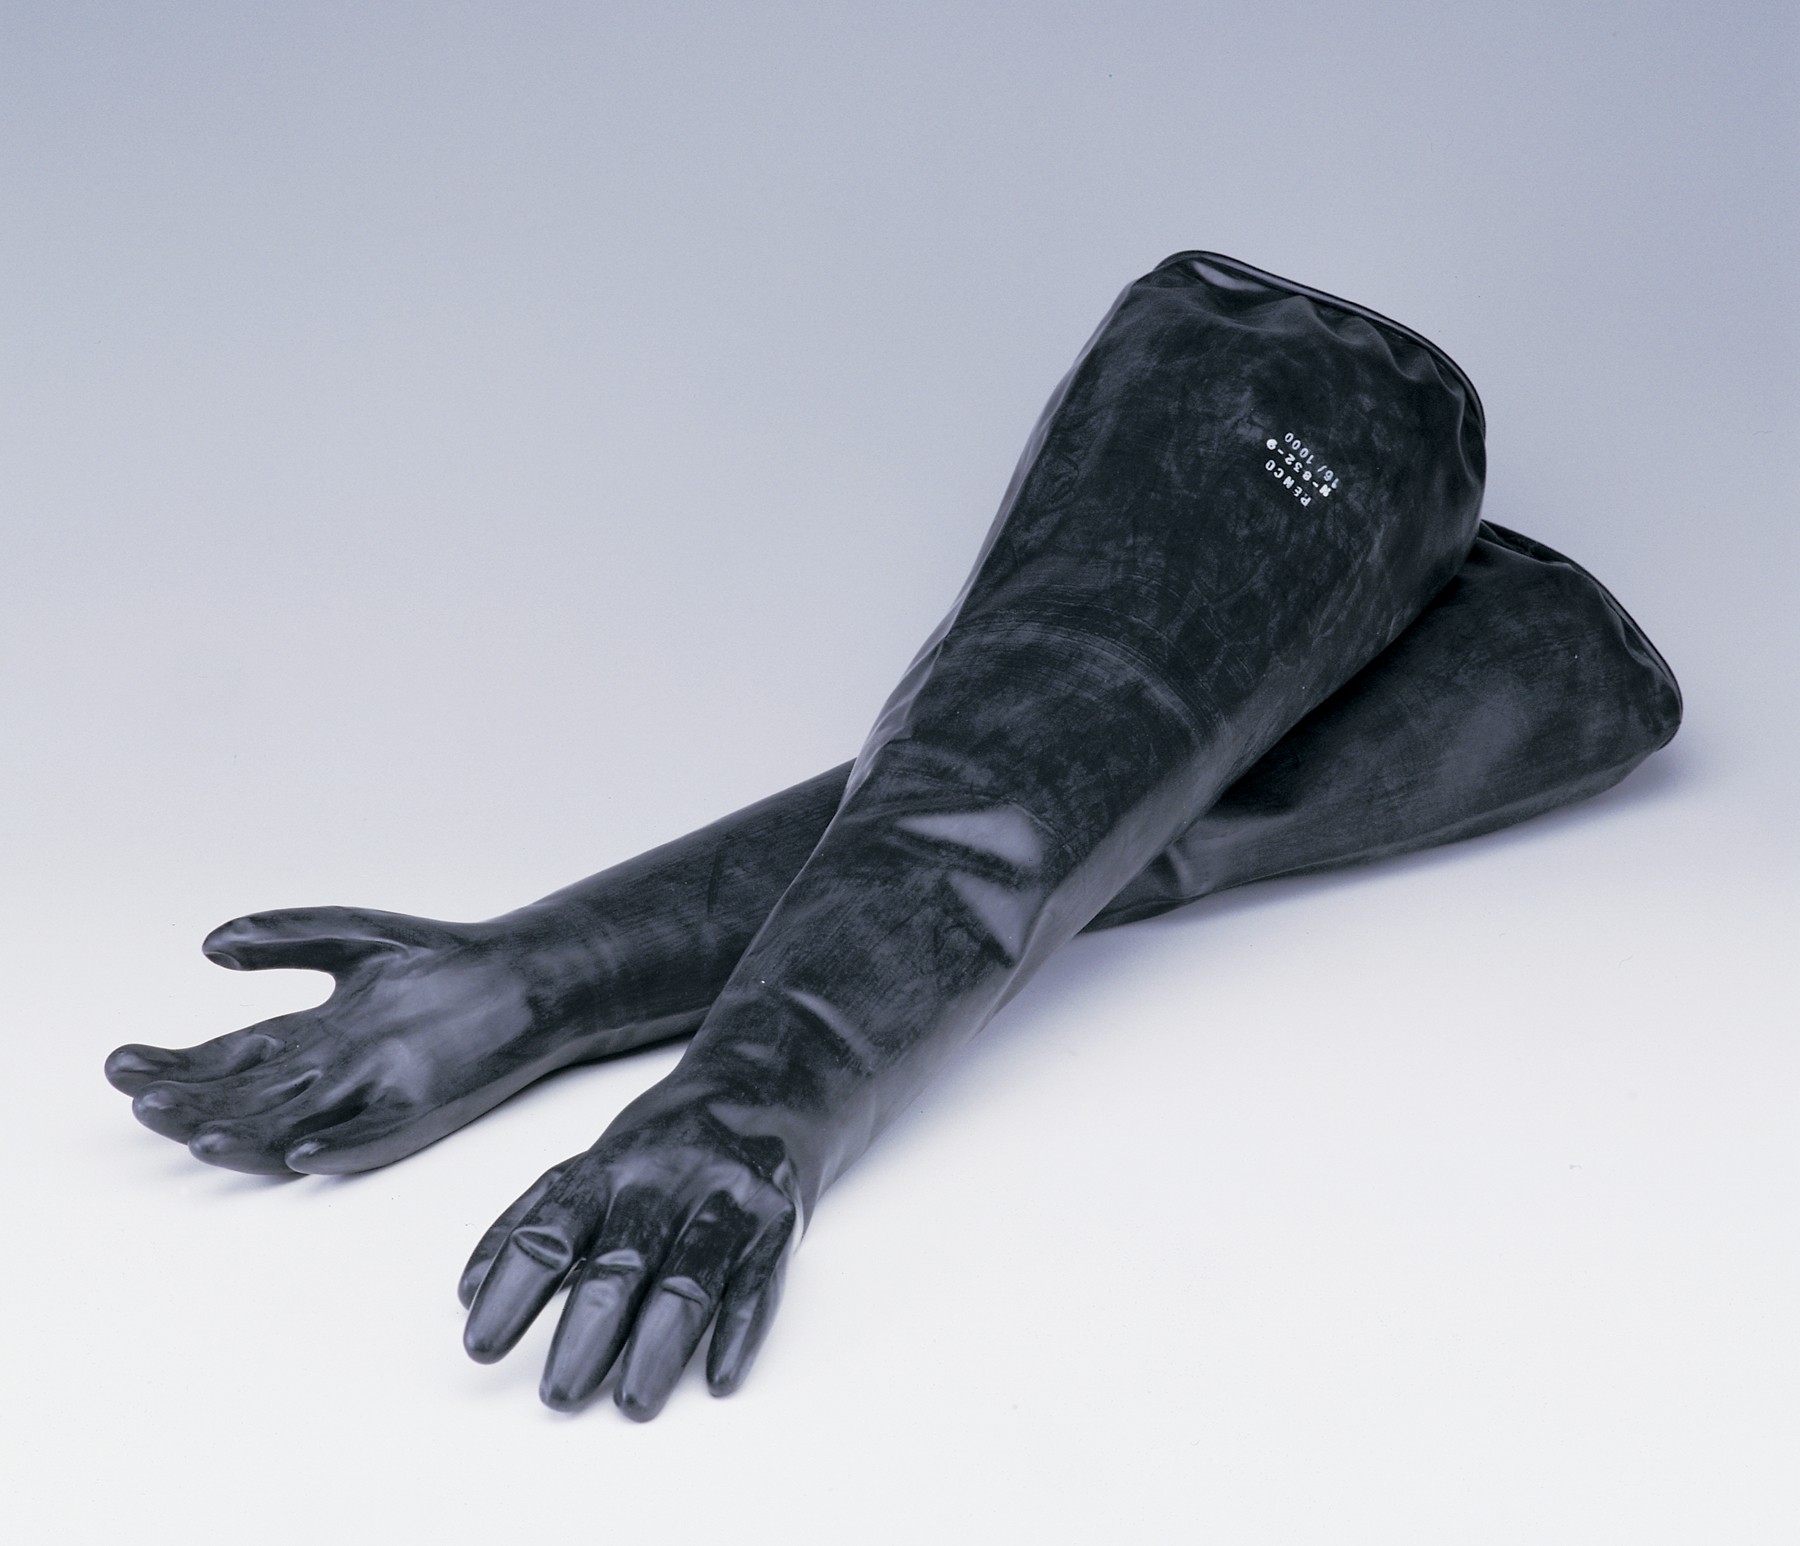 SP Bel-Art Glove Box Neoprene Sleeved Gloves; Size 8 